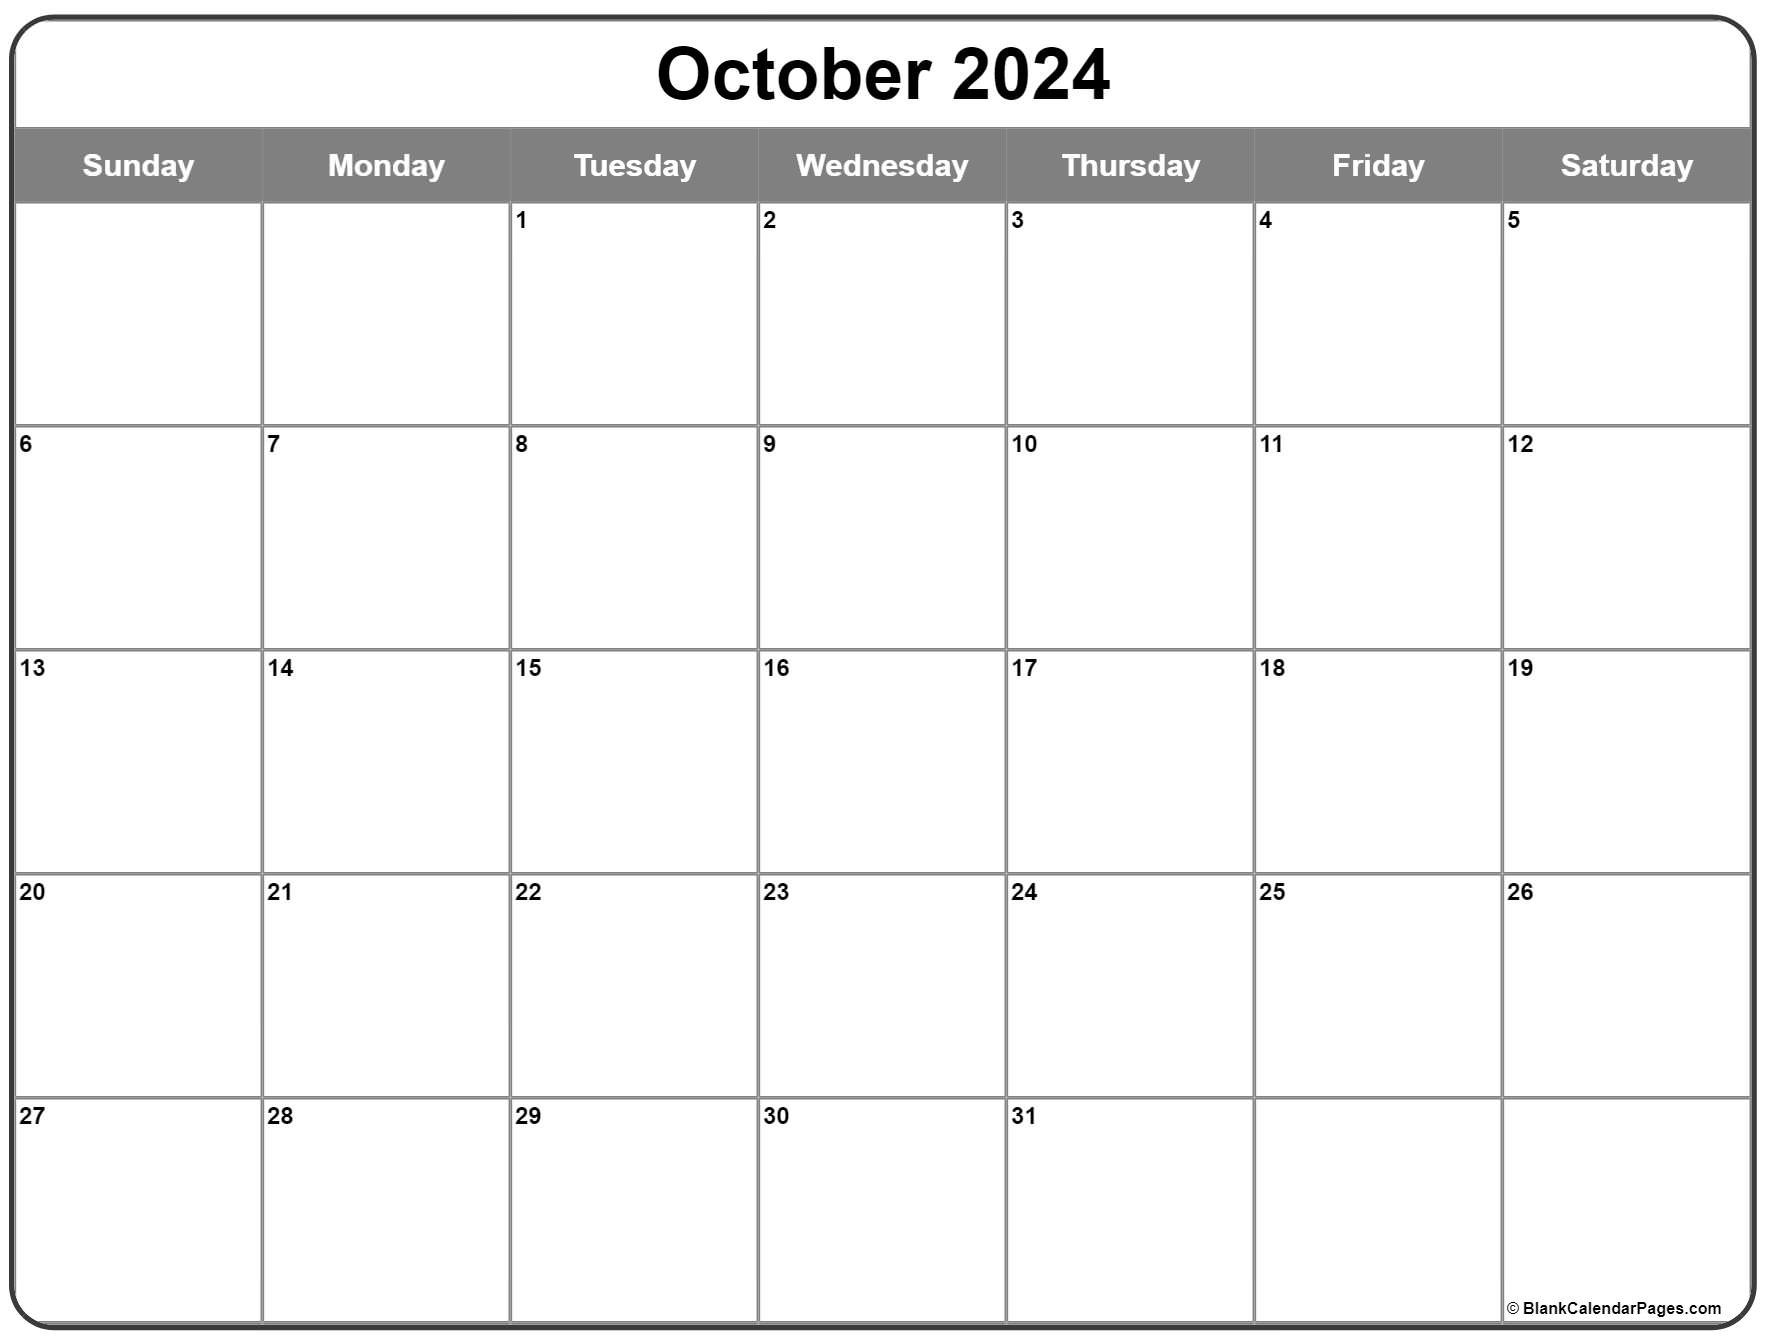 october-2022-calendar-free-printable-calendar